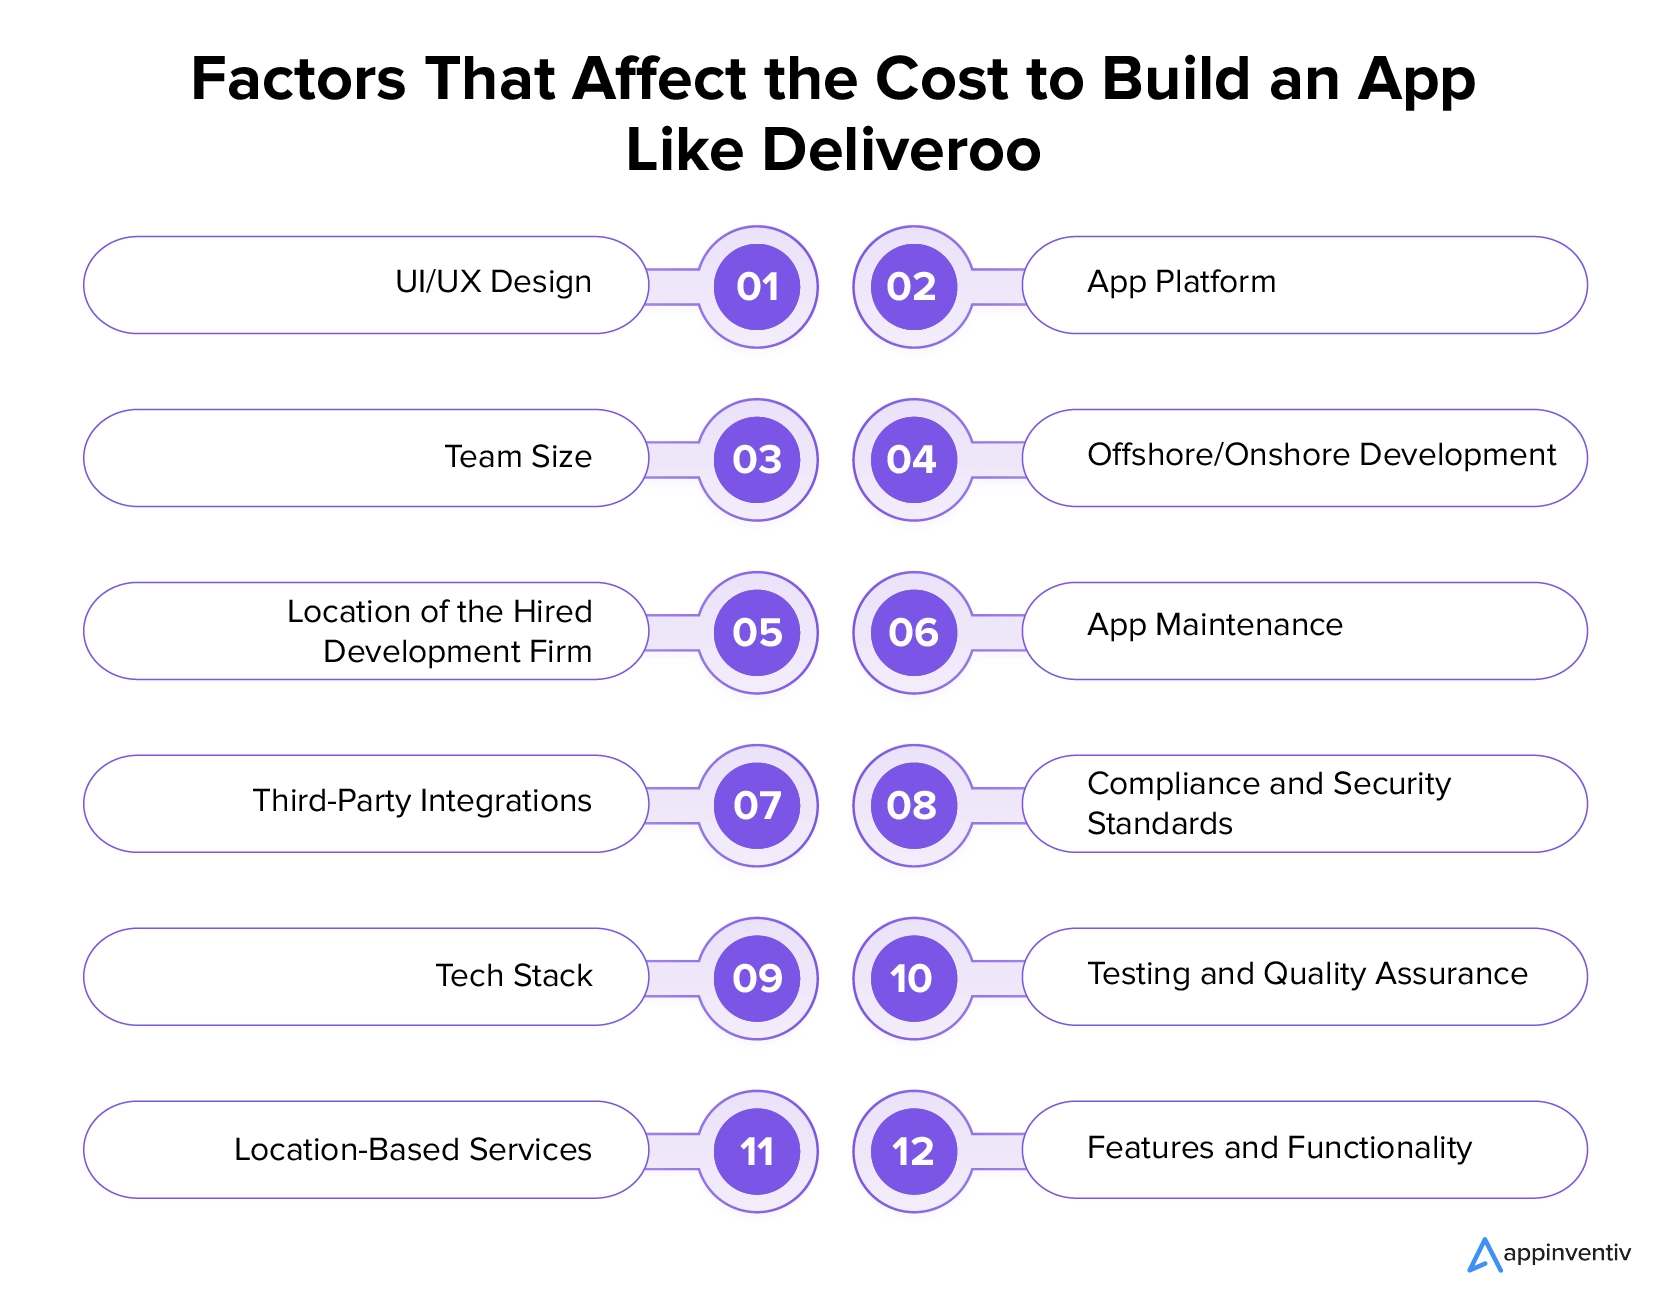 Czynniki wpływające na koszt stworzenia aplikacji takiej jak Deliveroo